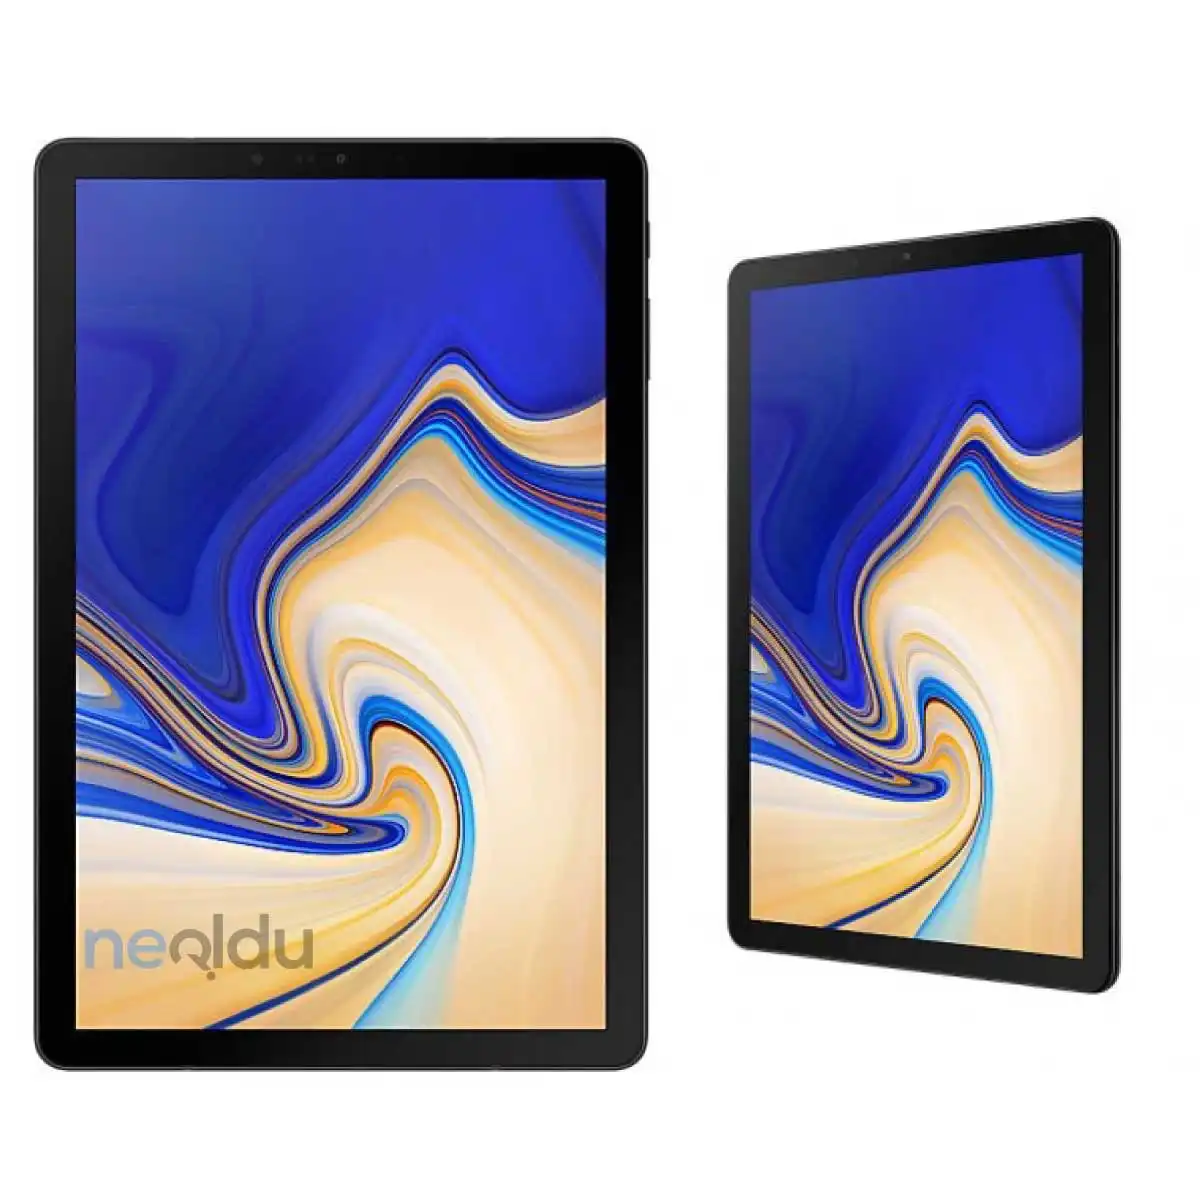 Samsung Galaxy Tab S4 Tablet